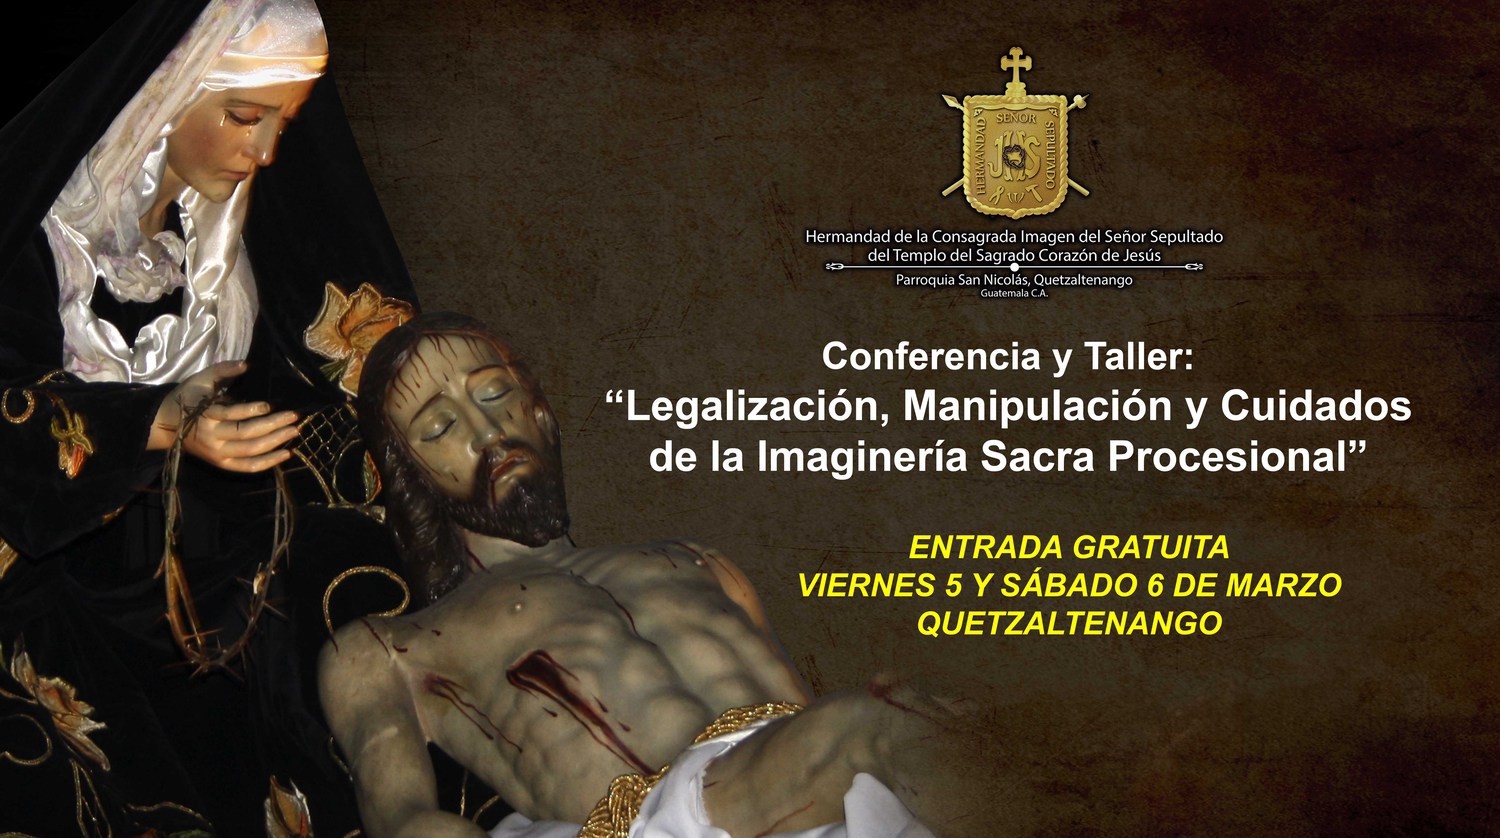 Conferencia y Taller de Imaginería Sacra en Quetzaltenango